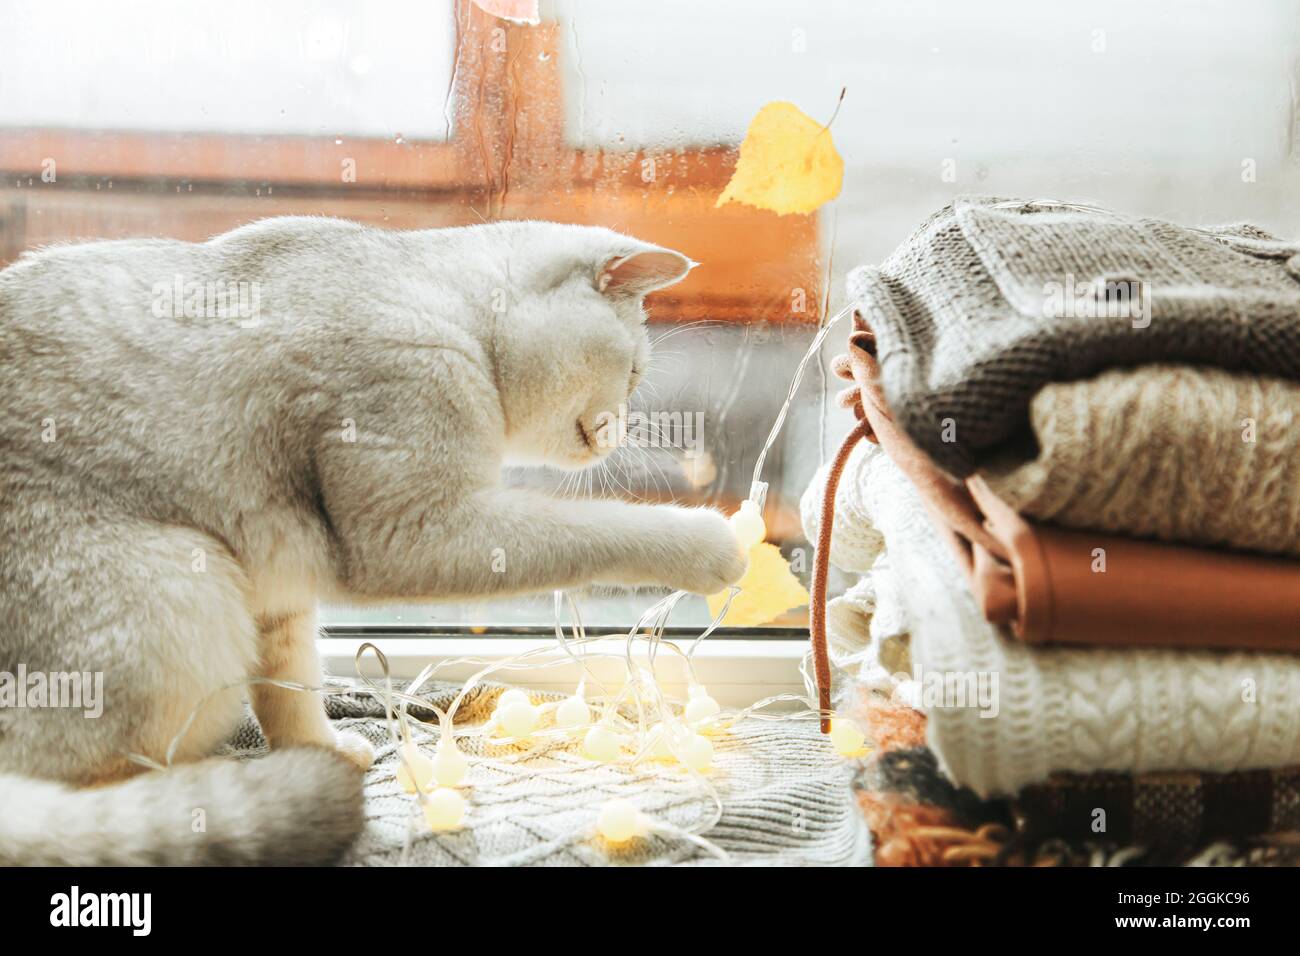 Il gatto britannico bianco gioca con una ghirlanda sul davanzale. Autunno, pioggia fuori dalla finestra, le foglie cadono. Foto Stock